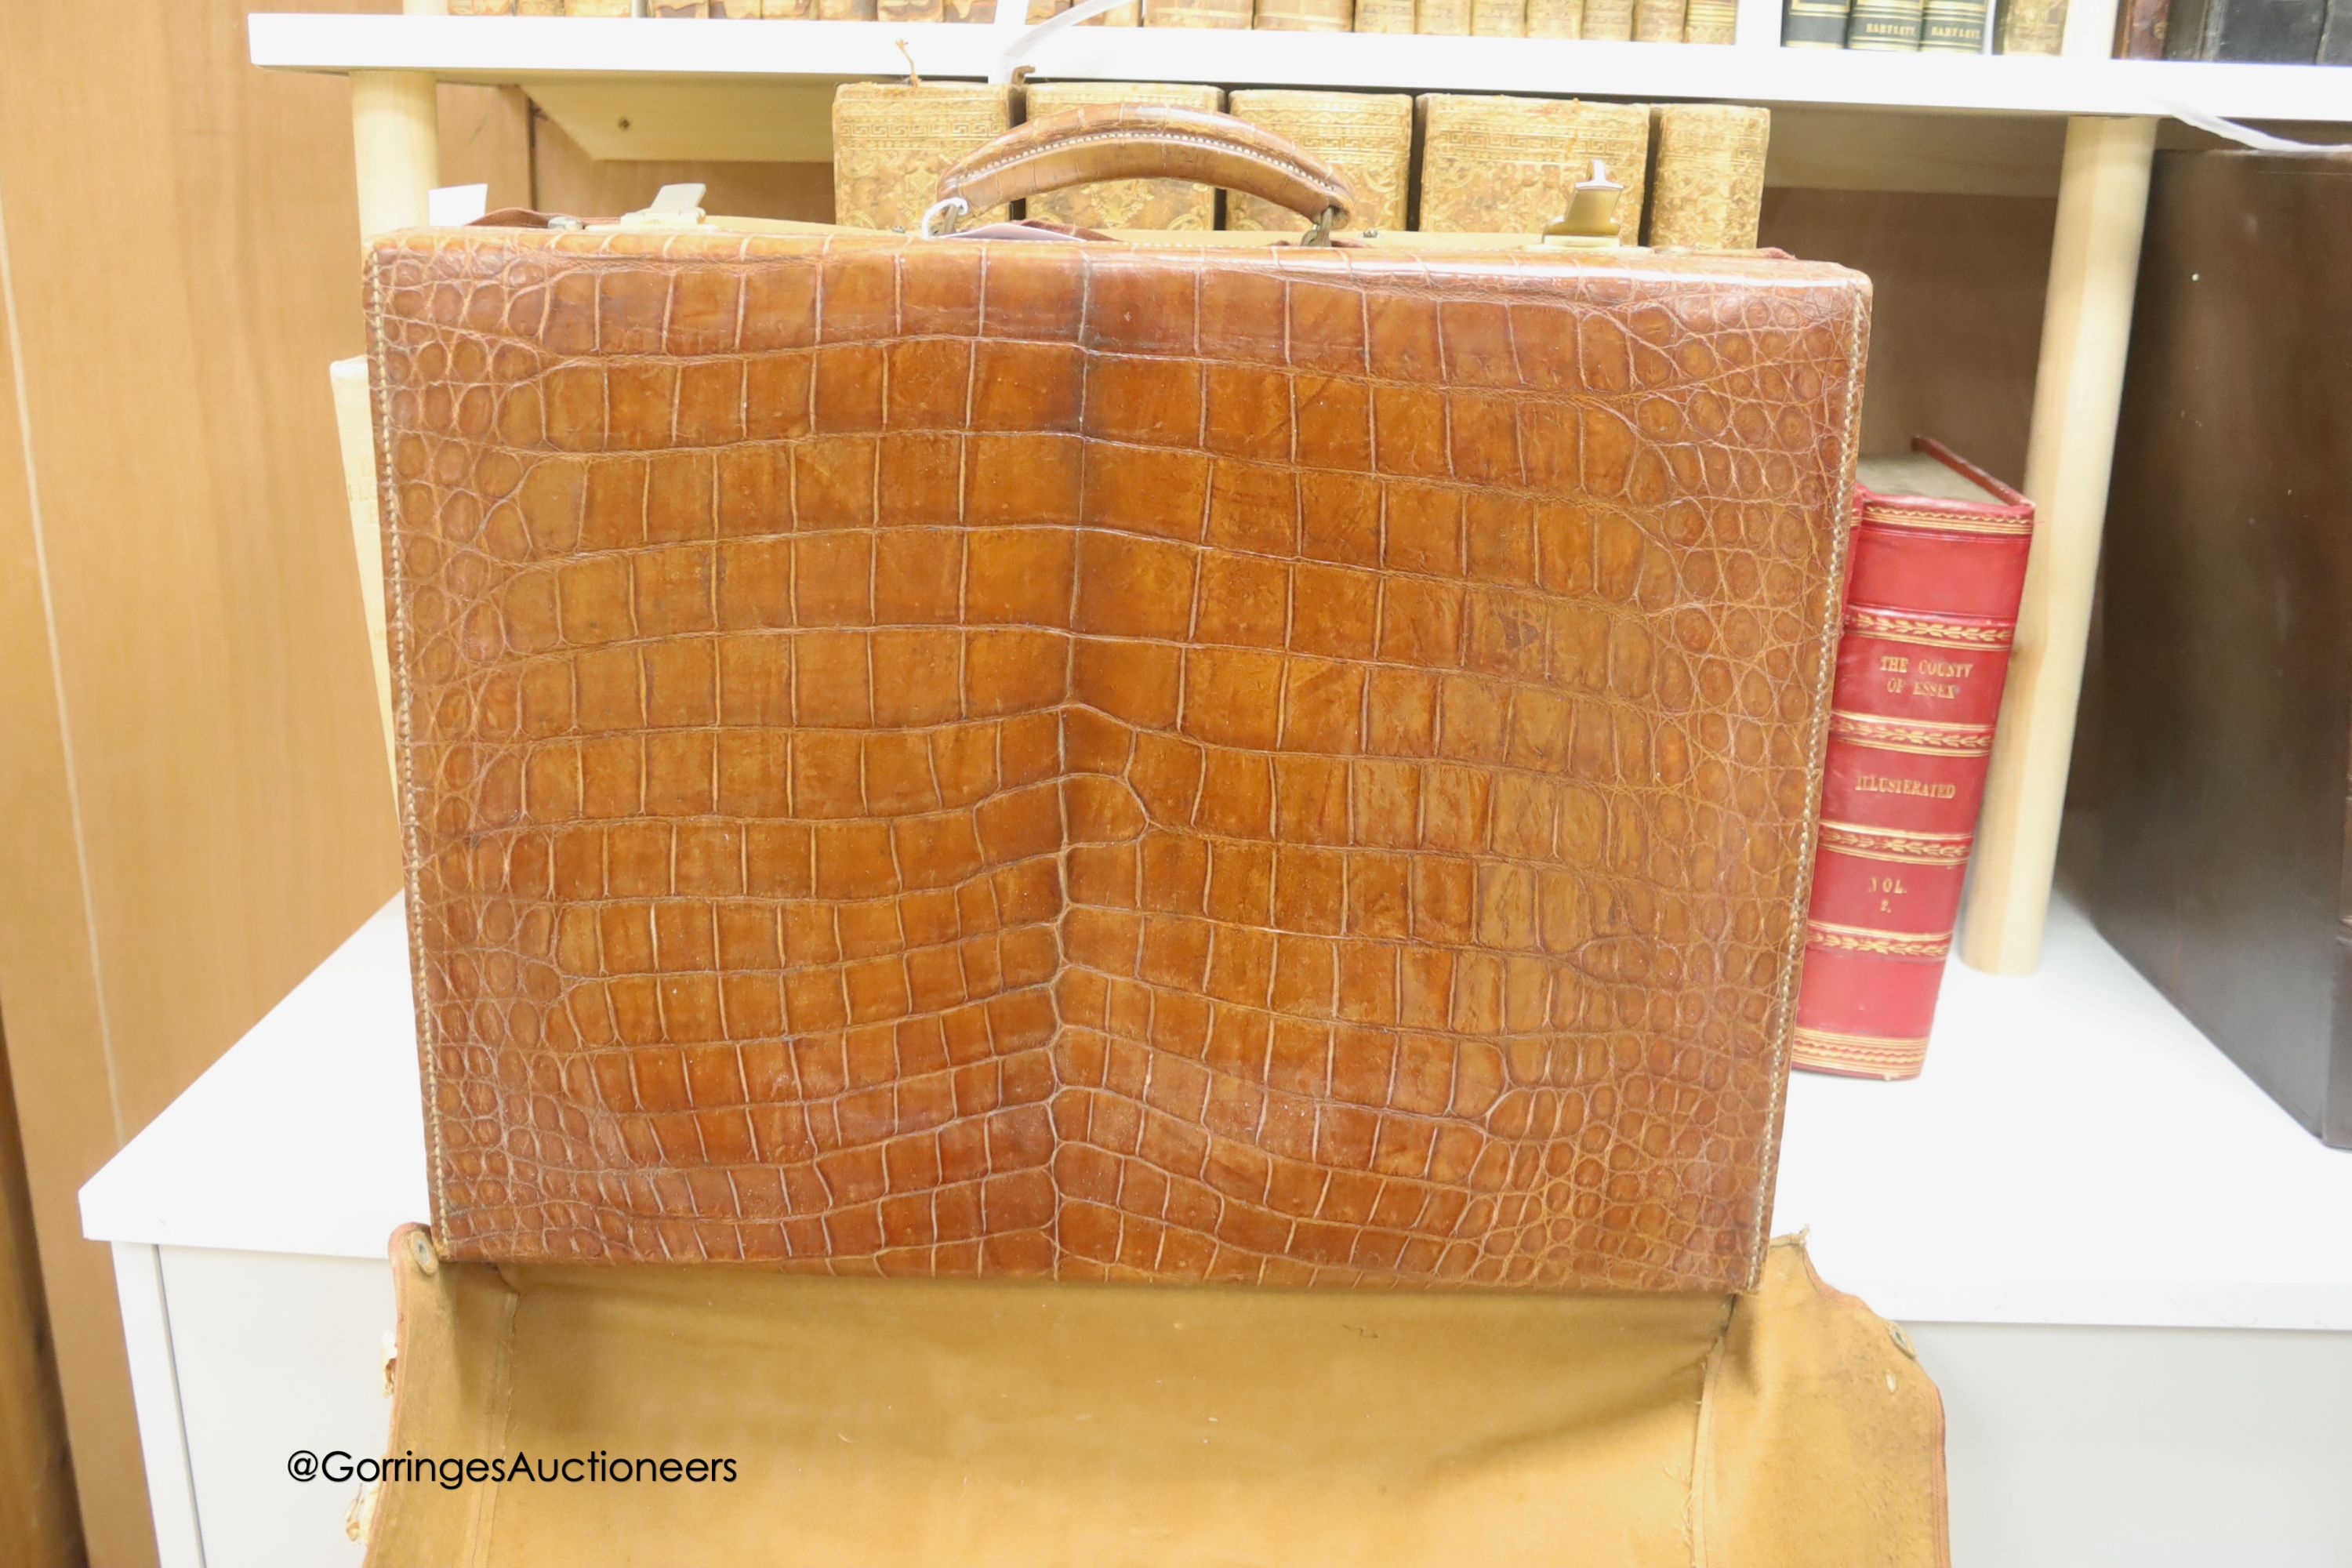 A Harrod's Limited crocodile skin case, width 50cm